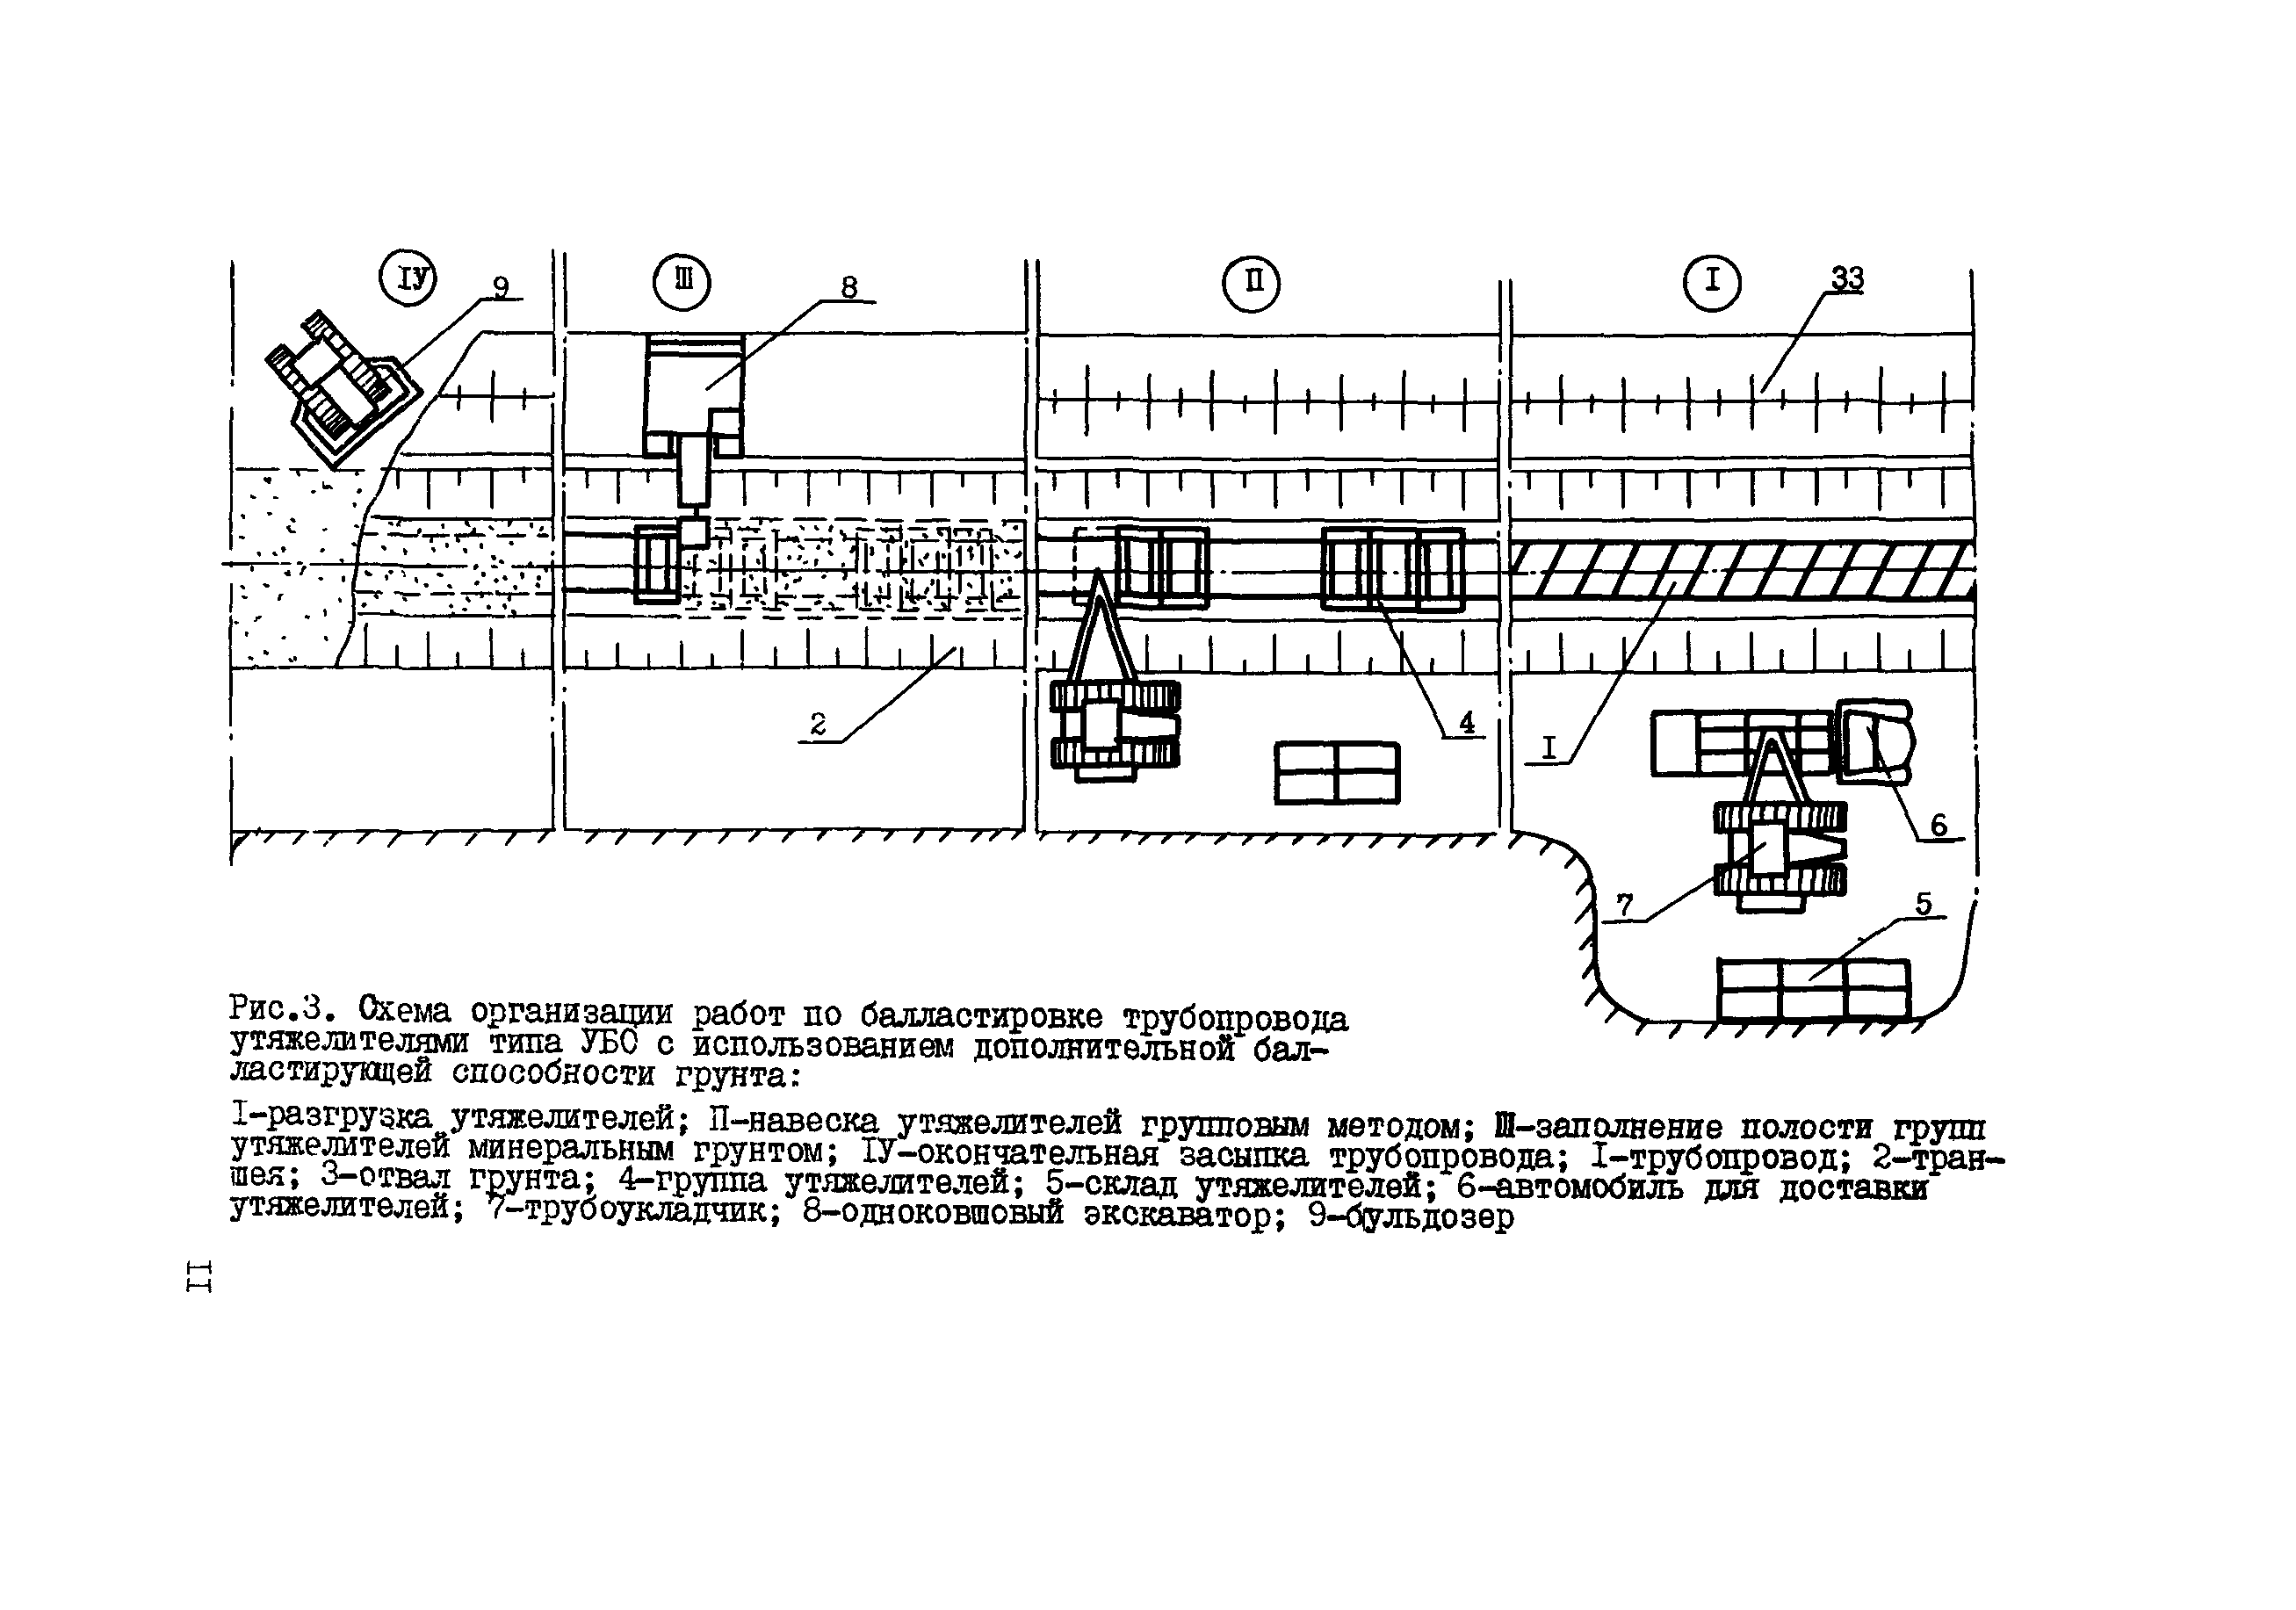 ВСН 204-86